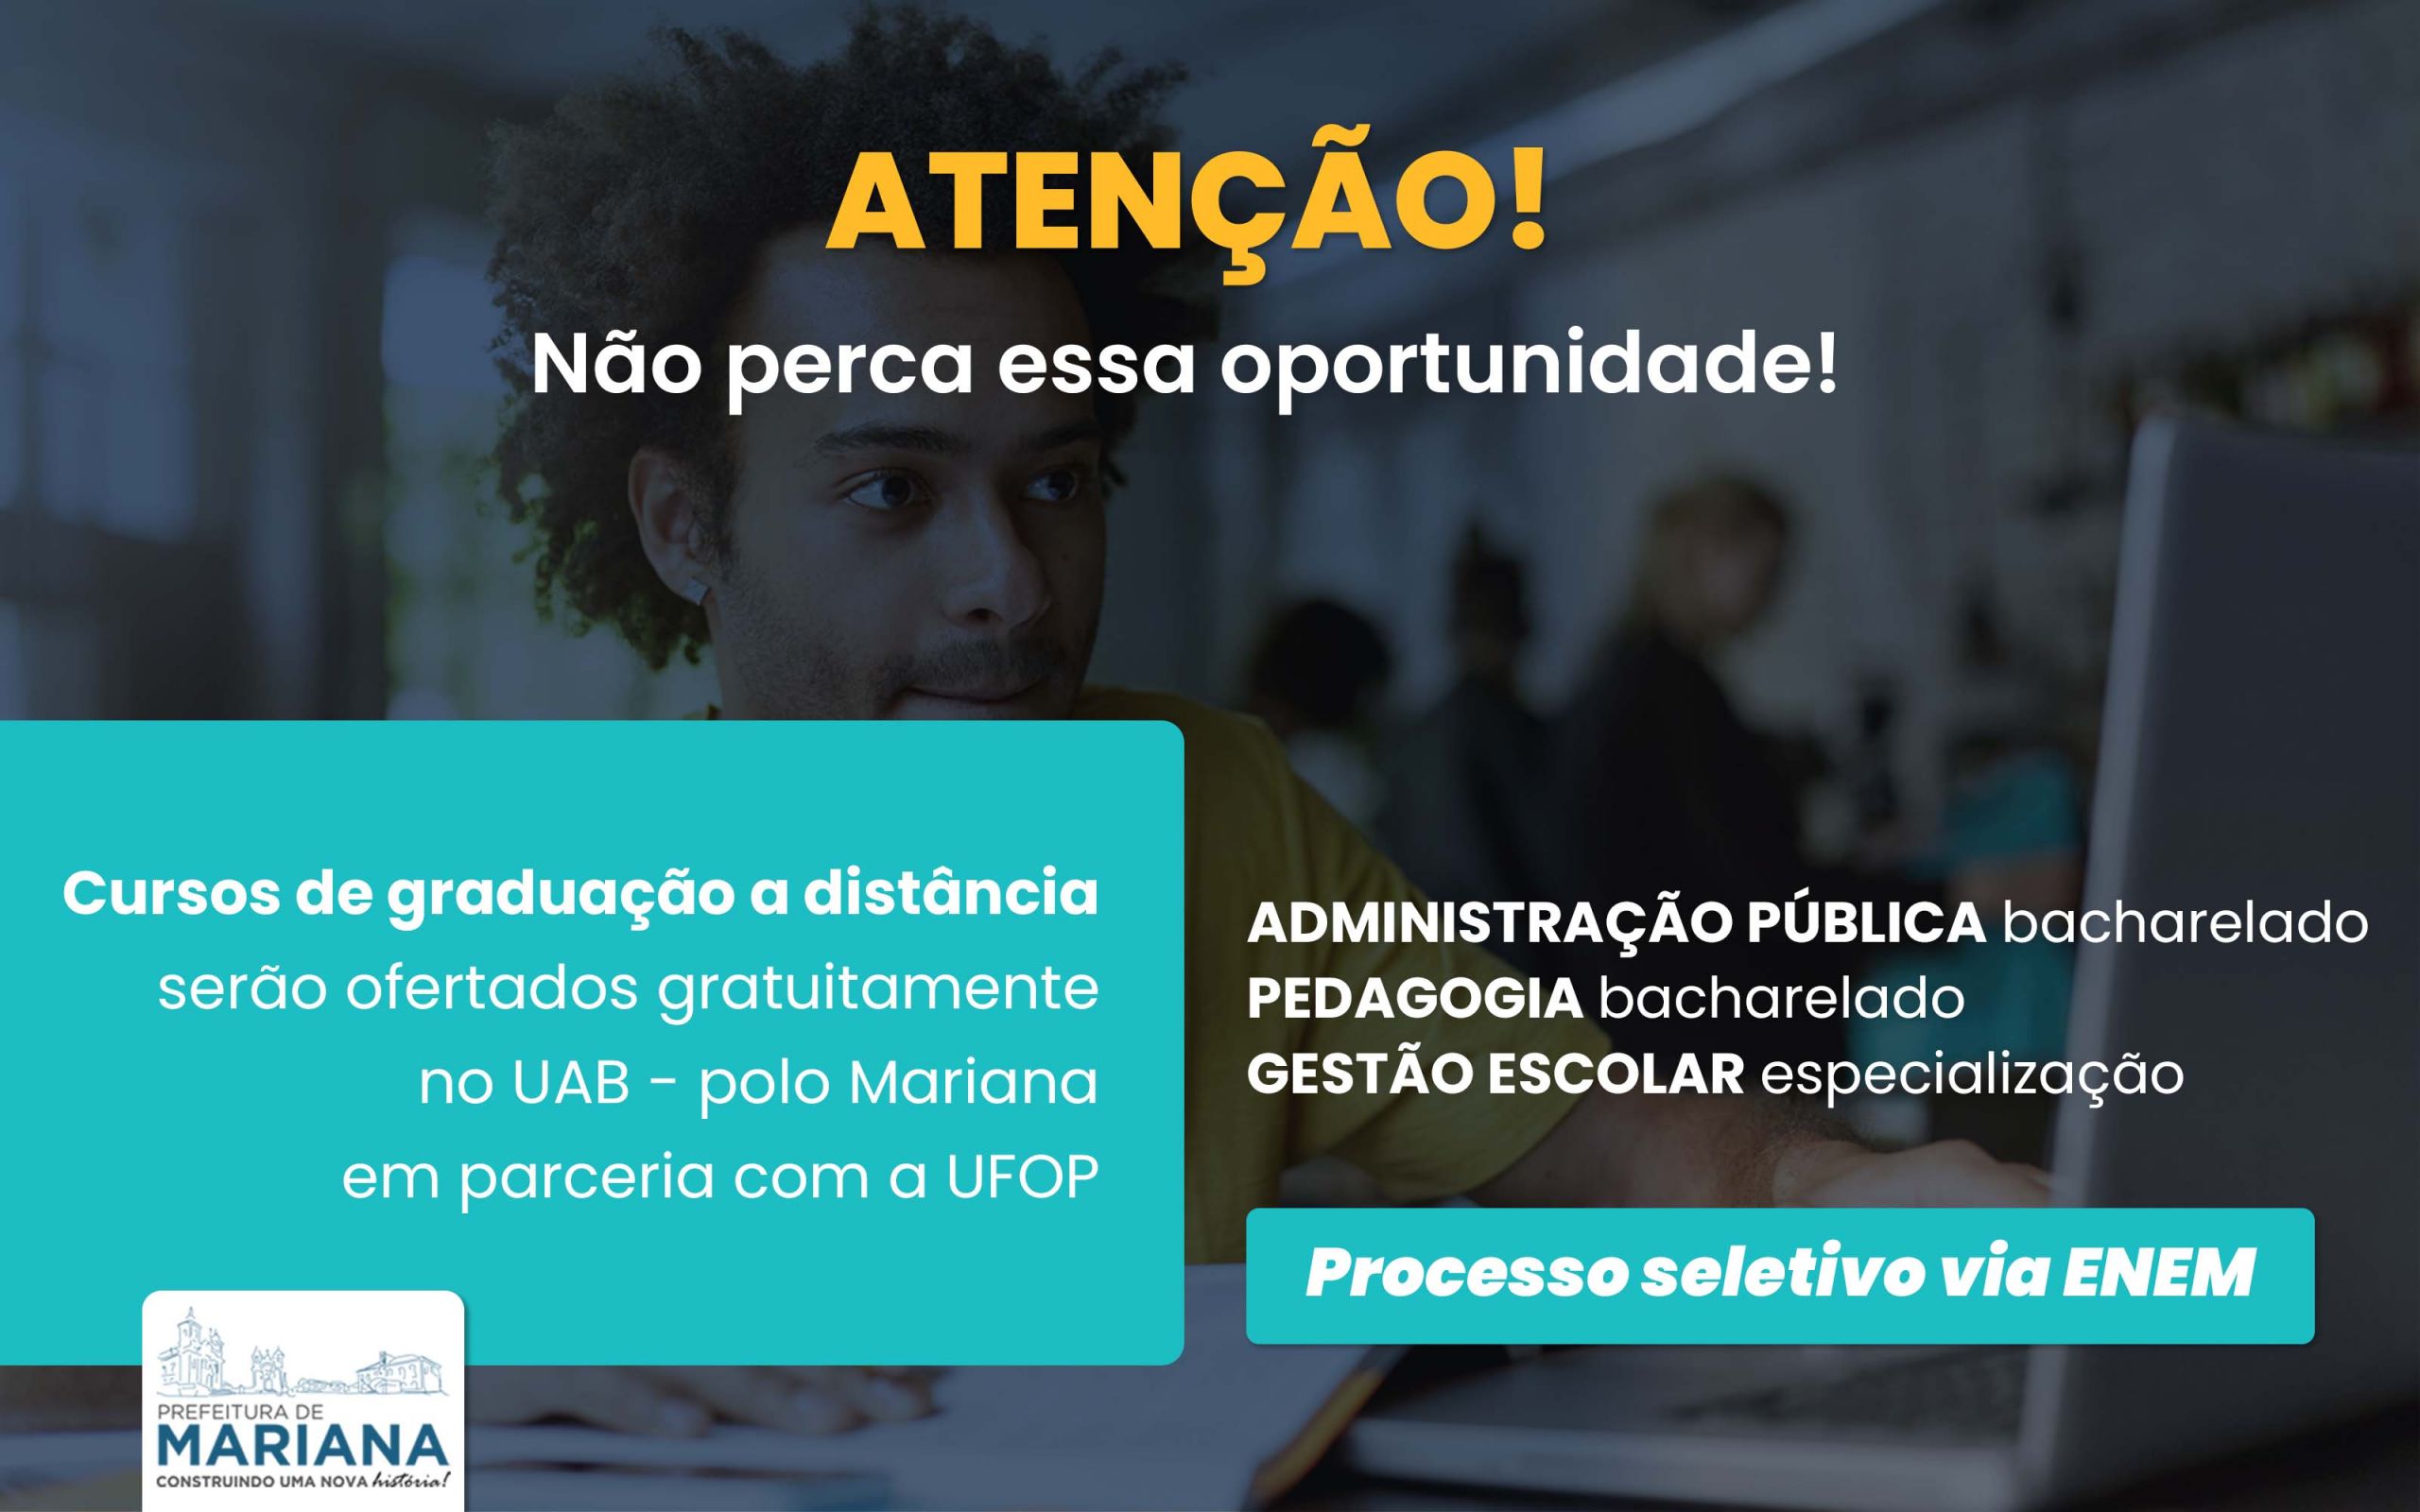 Prefeitura de Mariana firma parceria com UFOP e cursos de graduação a distância serão ofertados em polo do município a partir de 2023